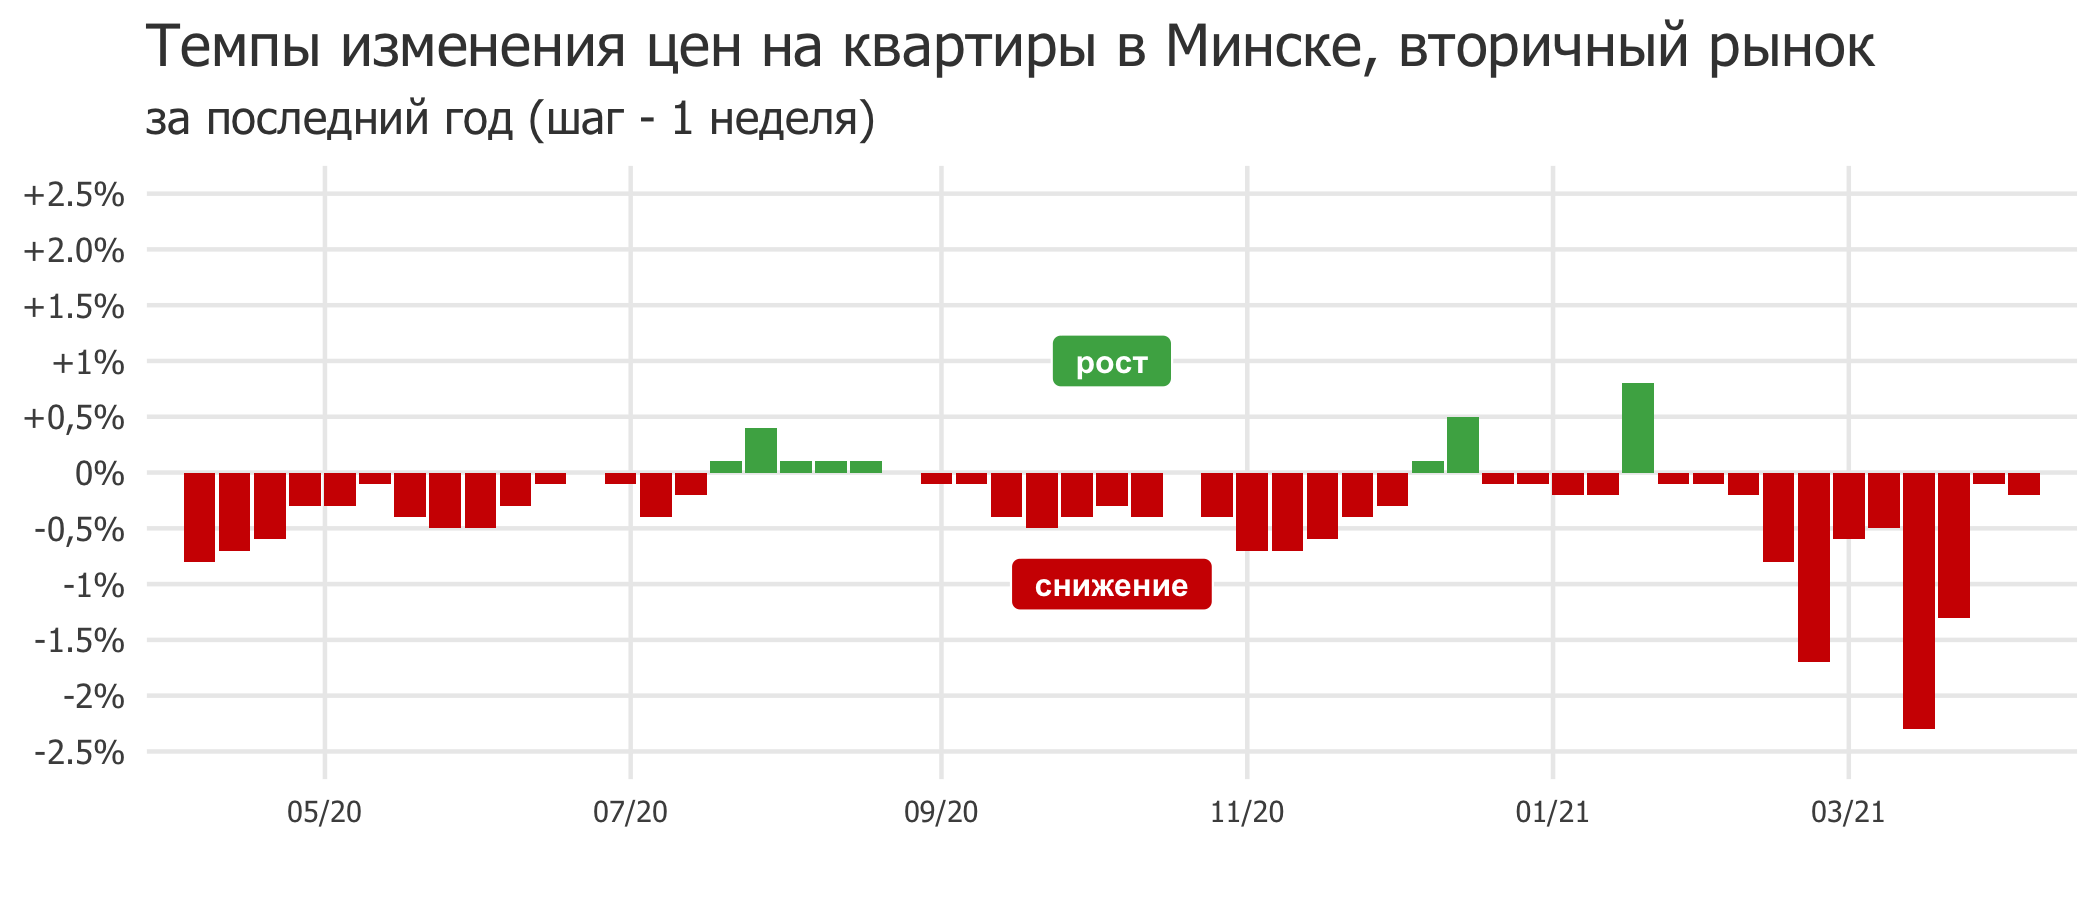 Мониторинг цен предложения квартир в Минске за 29 марта — 5 апреля 2021 года